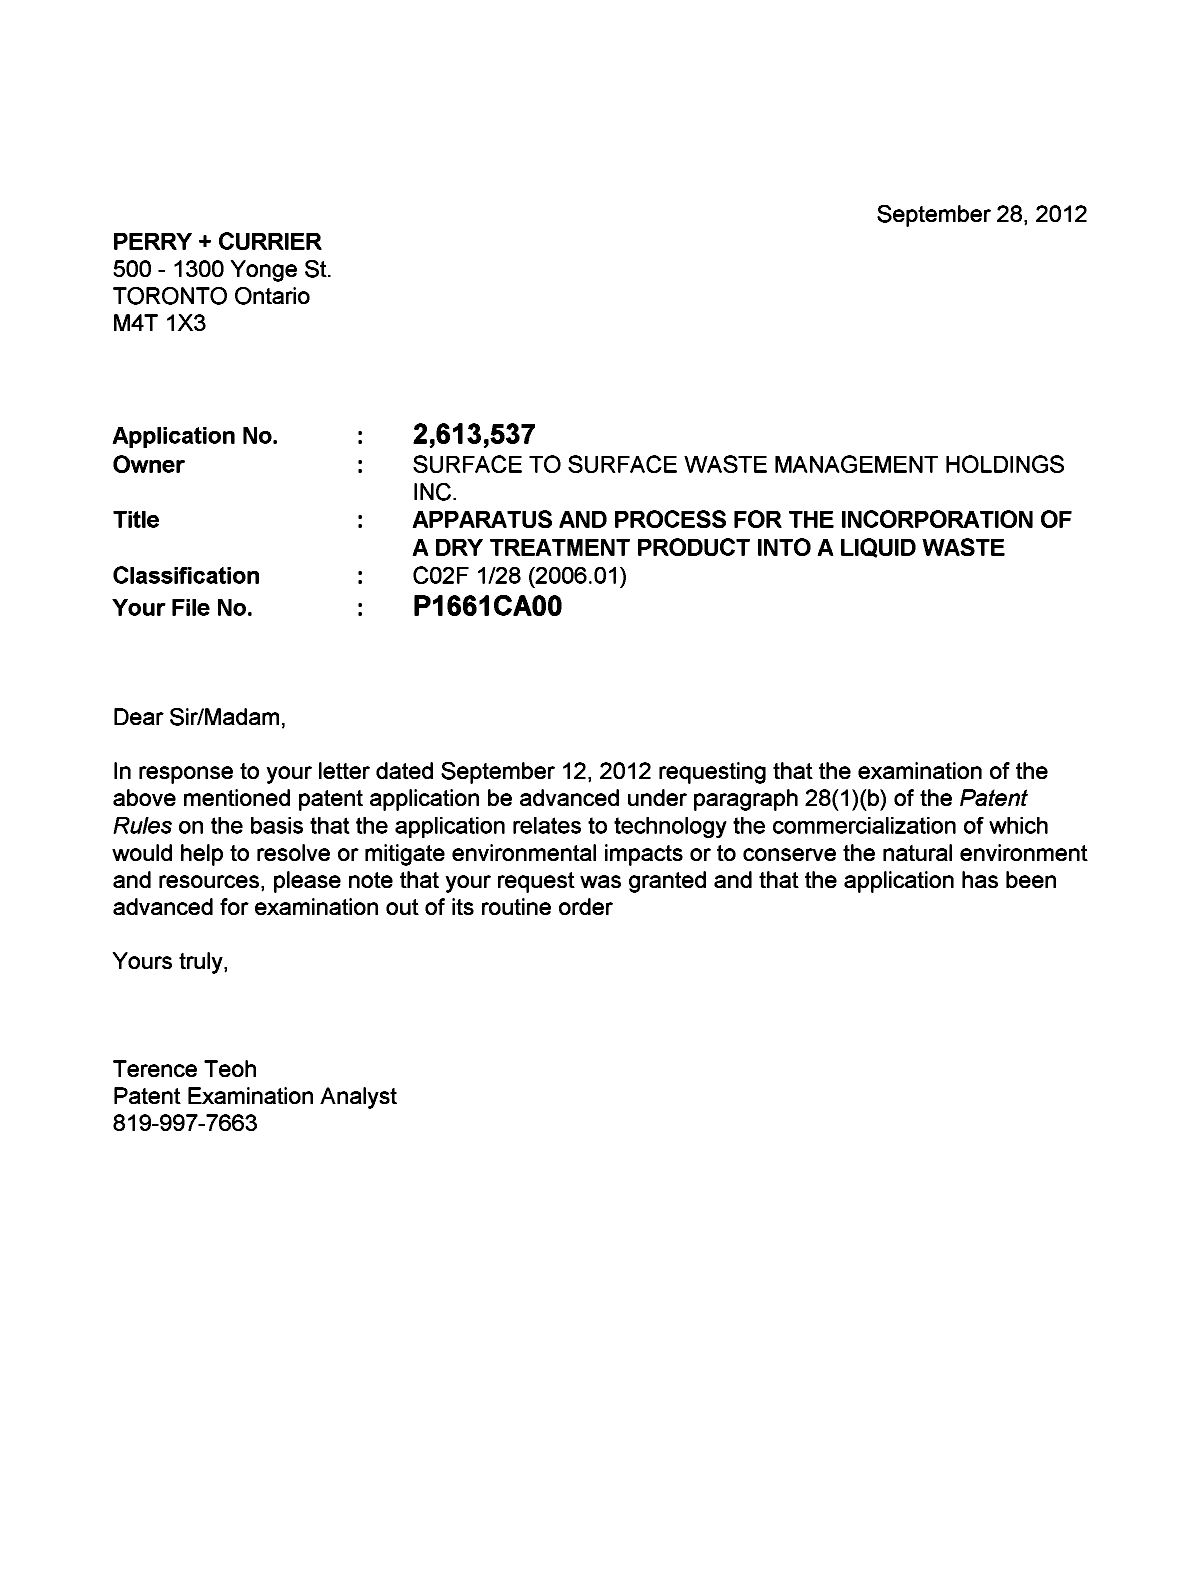 Document de brevet canadien 2613537. Poursuite-Amendment 20111228. Image 1 de 1